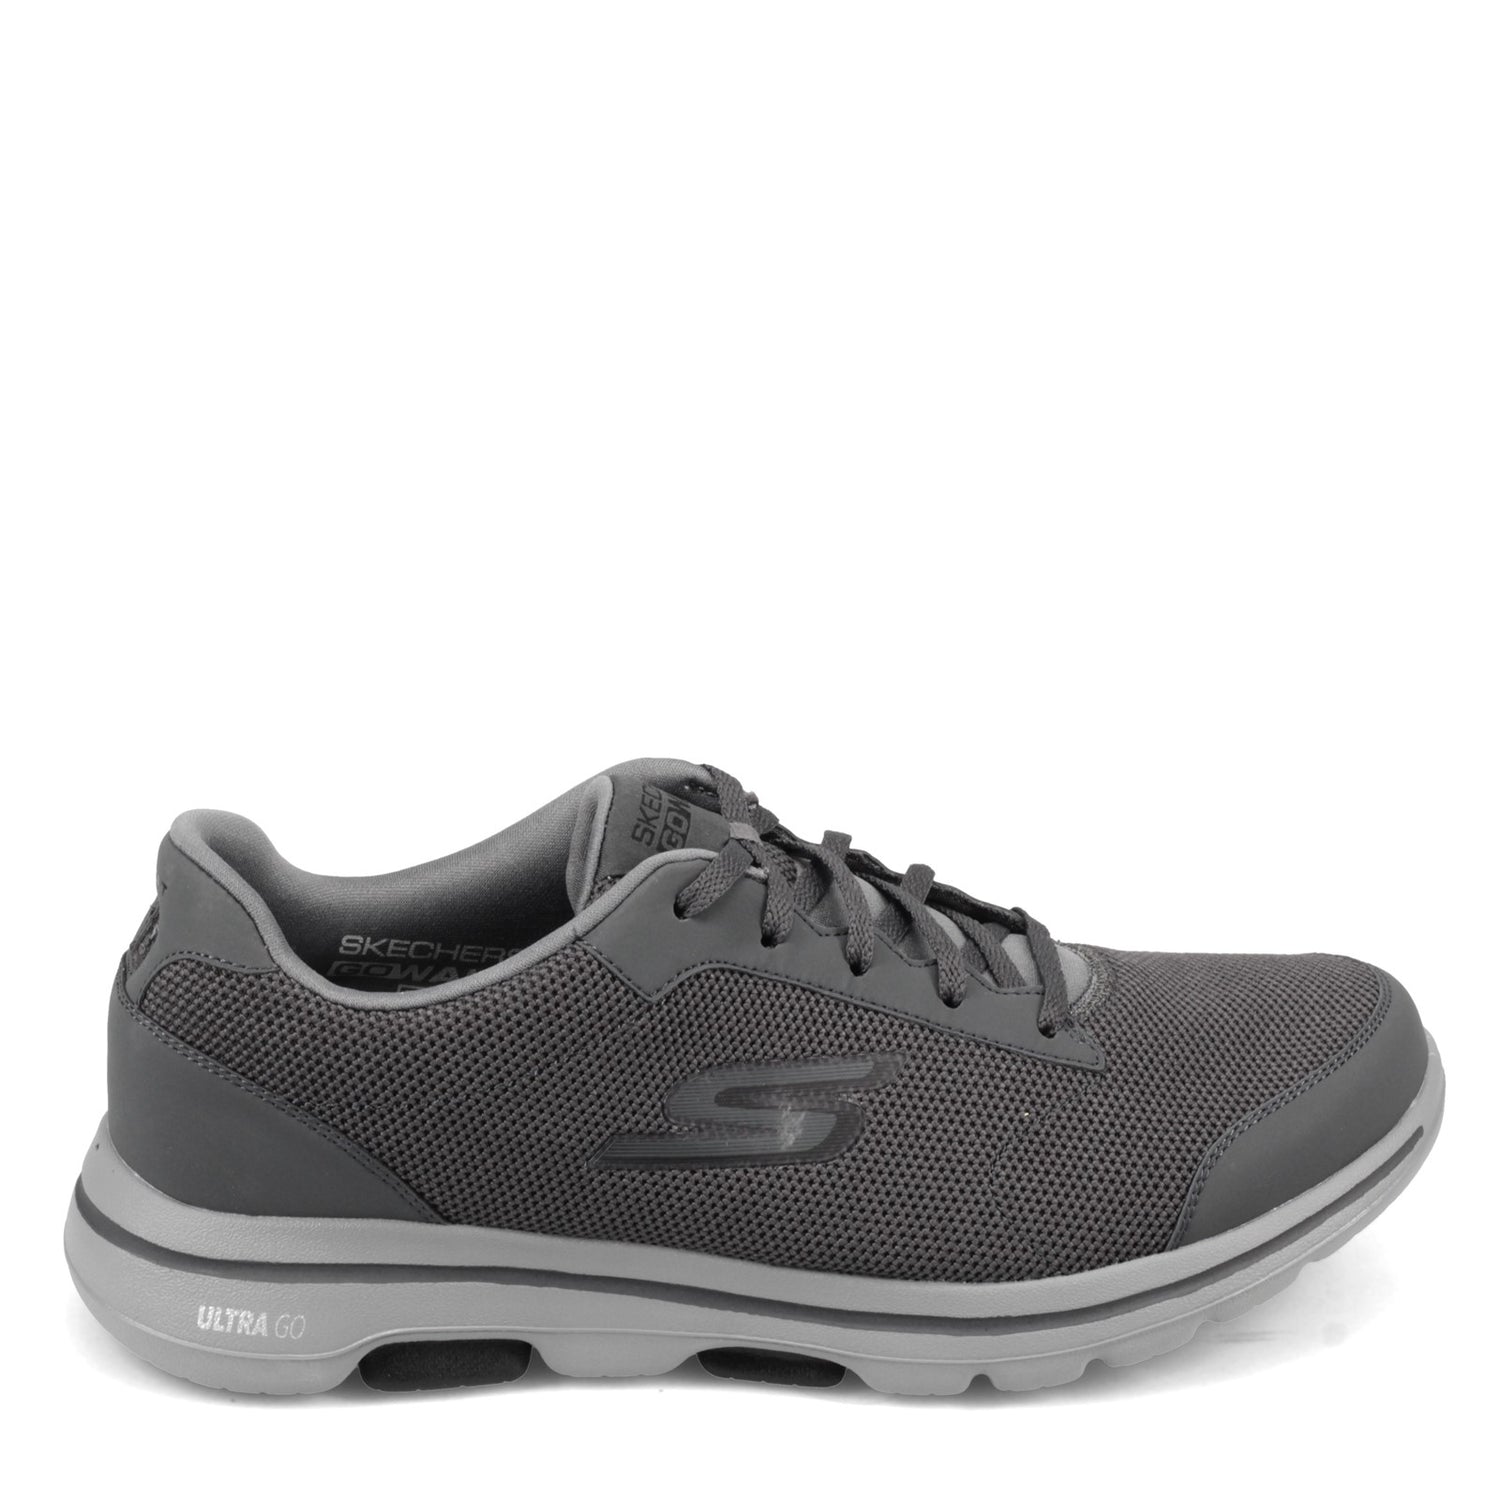 Peltz Shoes  Men's Skechers Go Walk 5 - Demitasse Sneaker - Wide Width CHARCOAL 55519EWW-CCBK